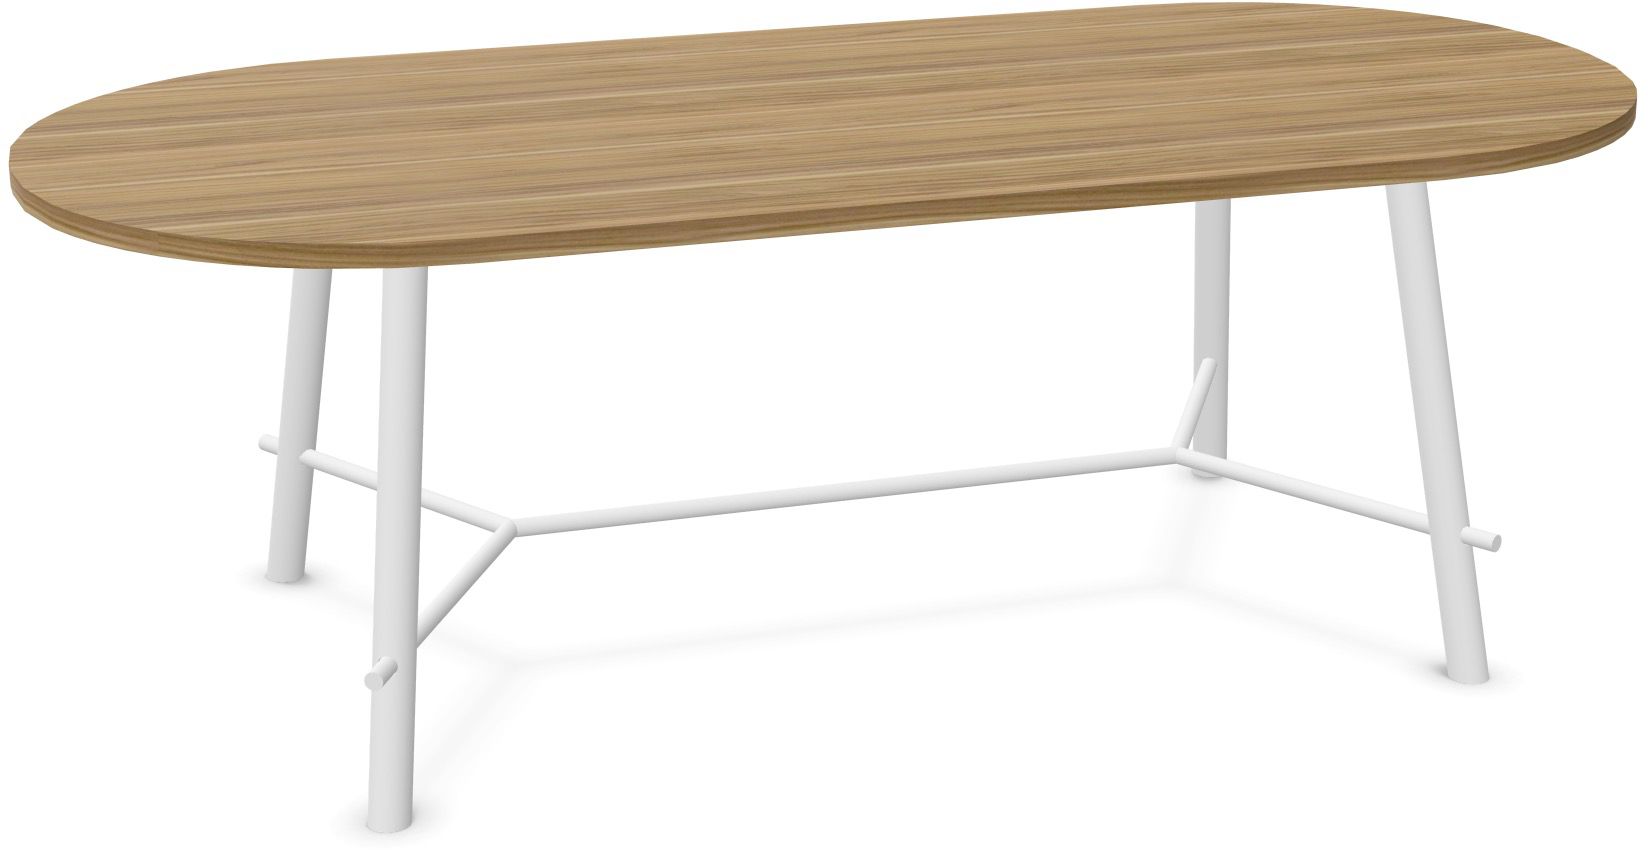 Record Living Tisch in Walnuss / Eiche weiss präsentiert im Onlineshop von KAQTU Design AG. Esstisch ist von Infiniti Design